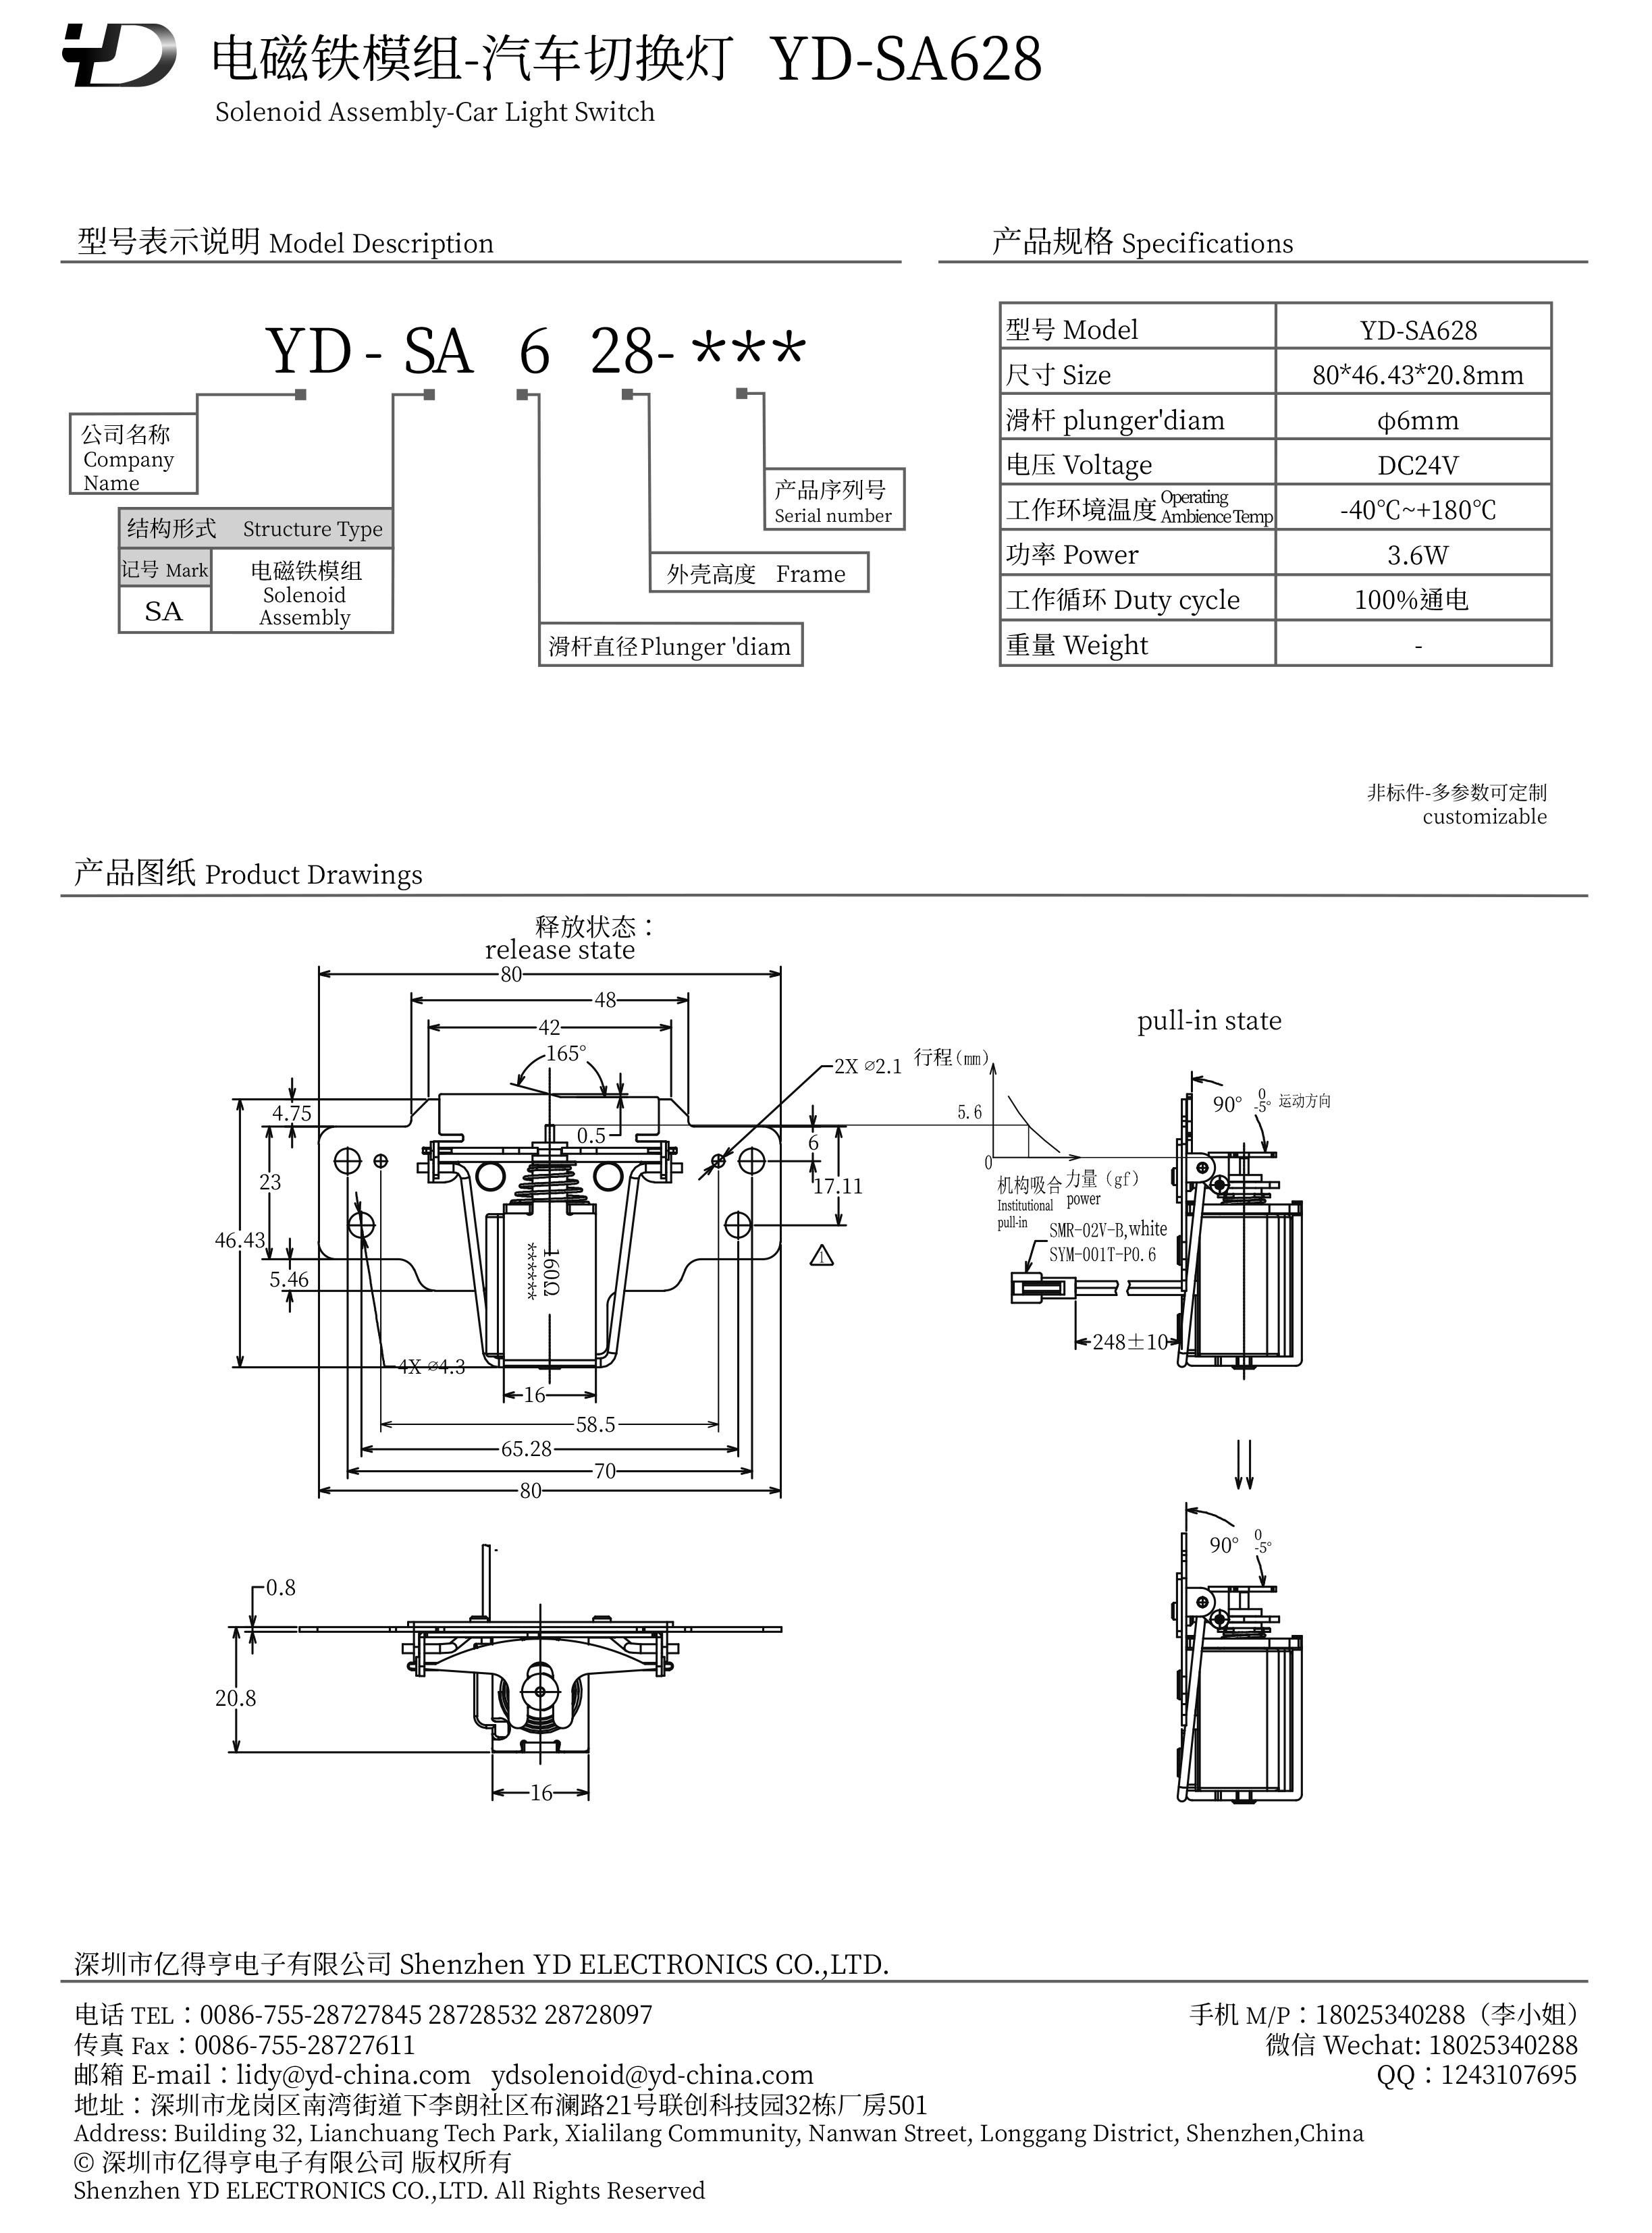 YD-SA628-PDF.jpg